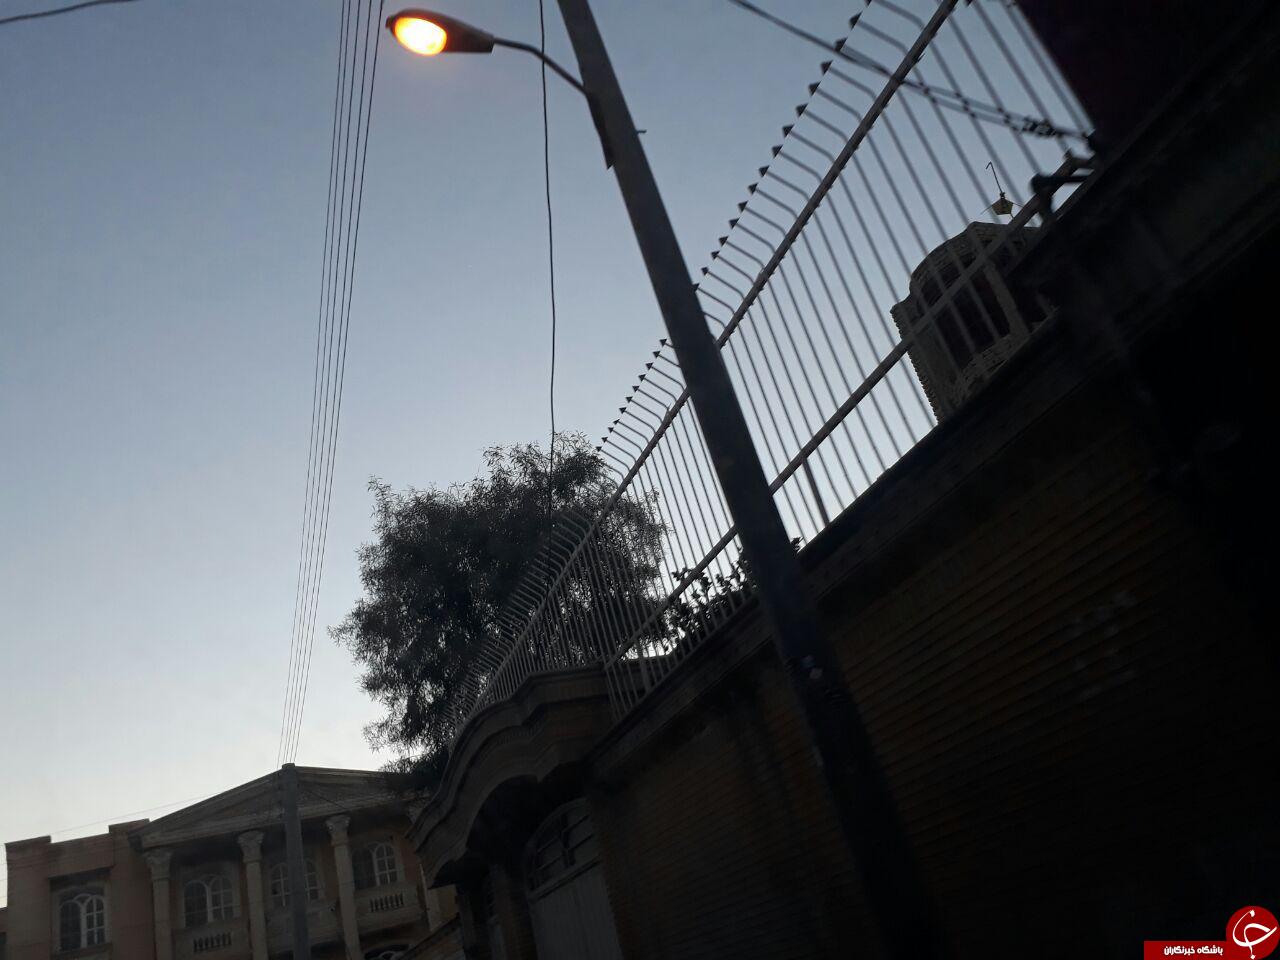 وقتی چراغ خیابان ها در روز روشن می ماند! + تصاویر